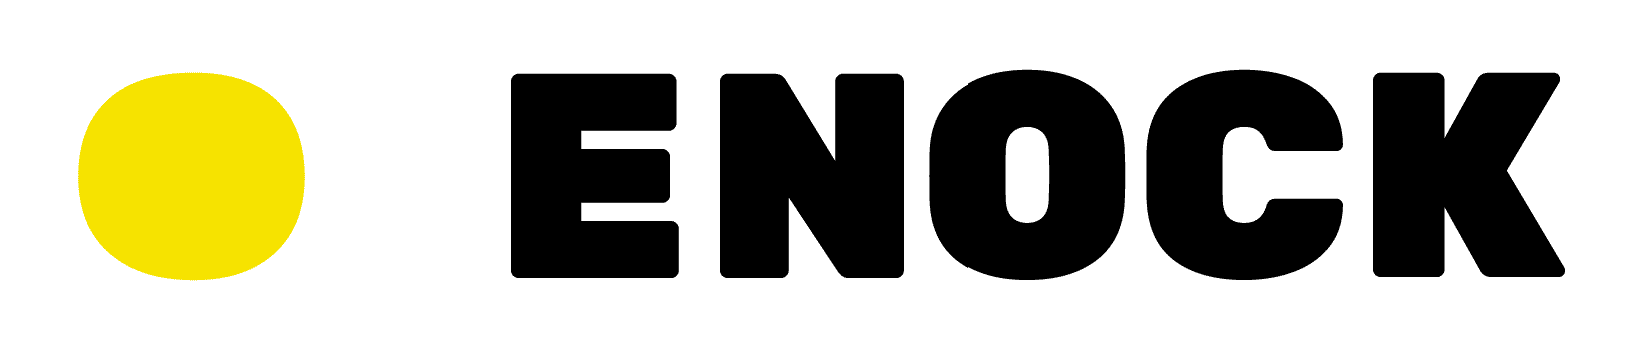 logo de Enock